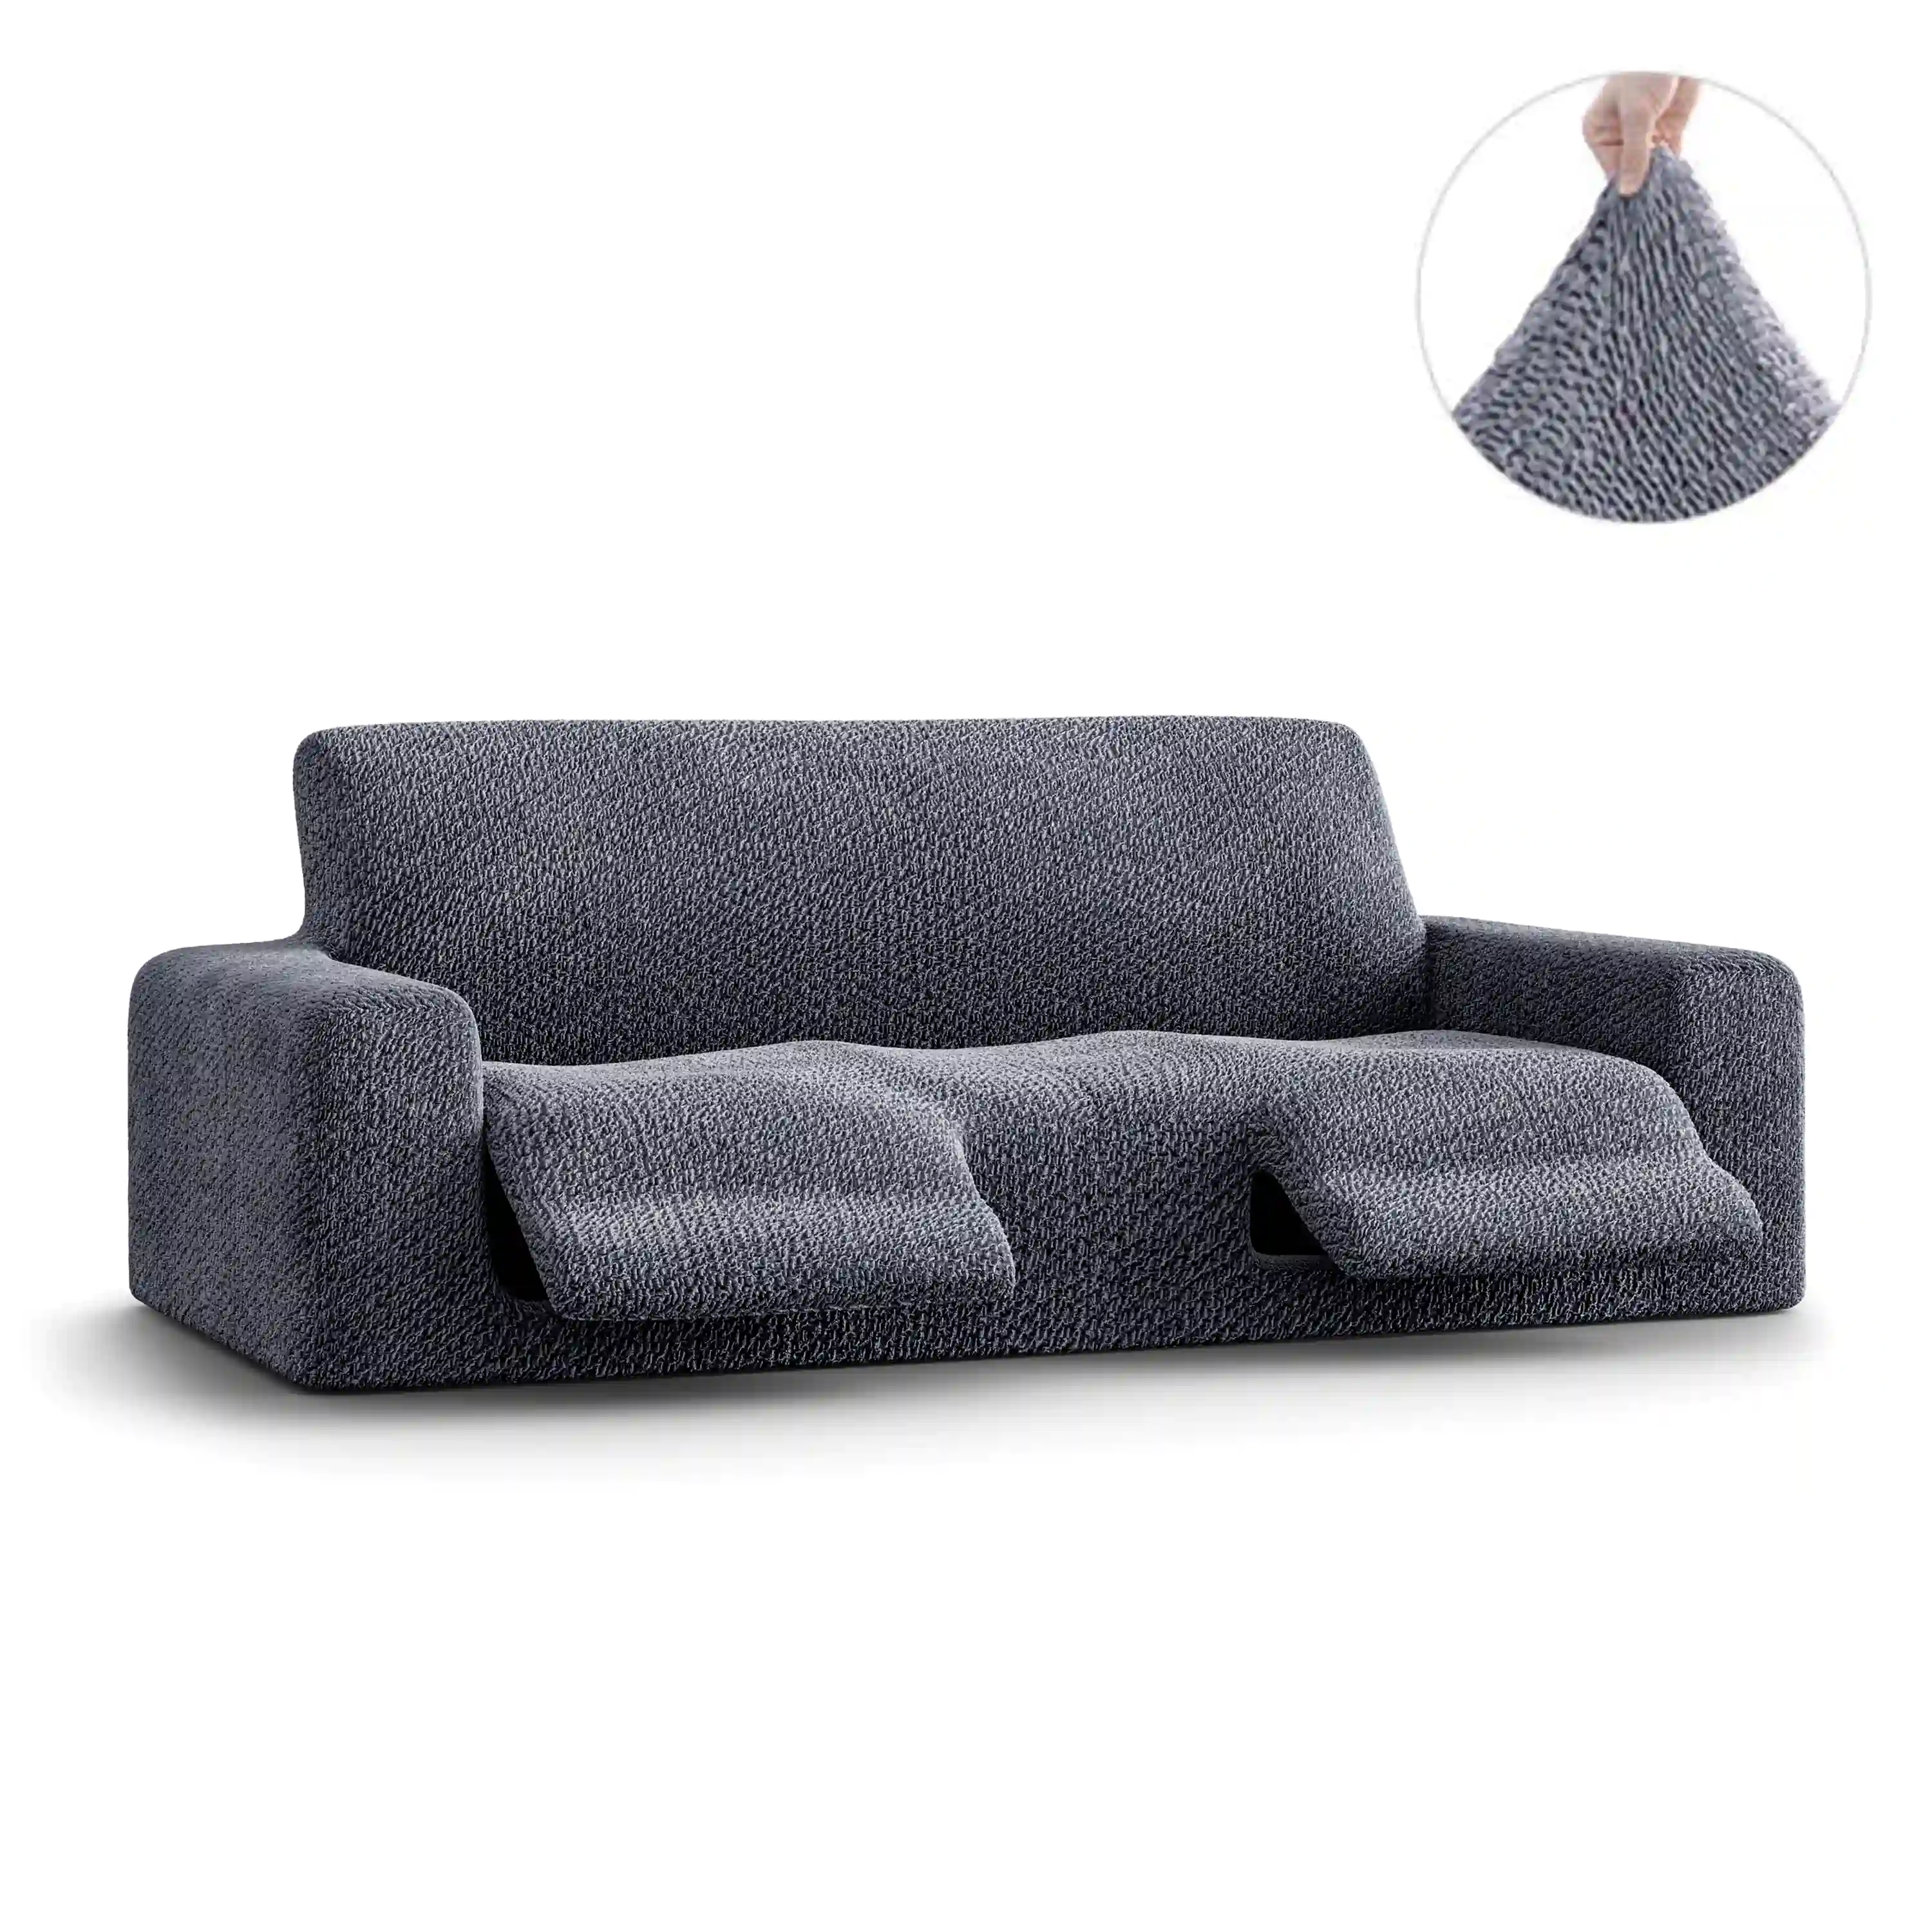 3 Seater Recliner Sofa Cover - Grey, Velvet